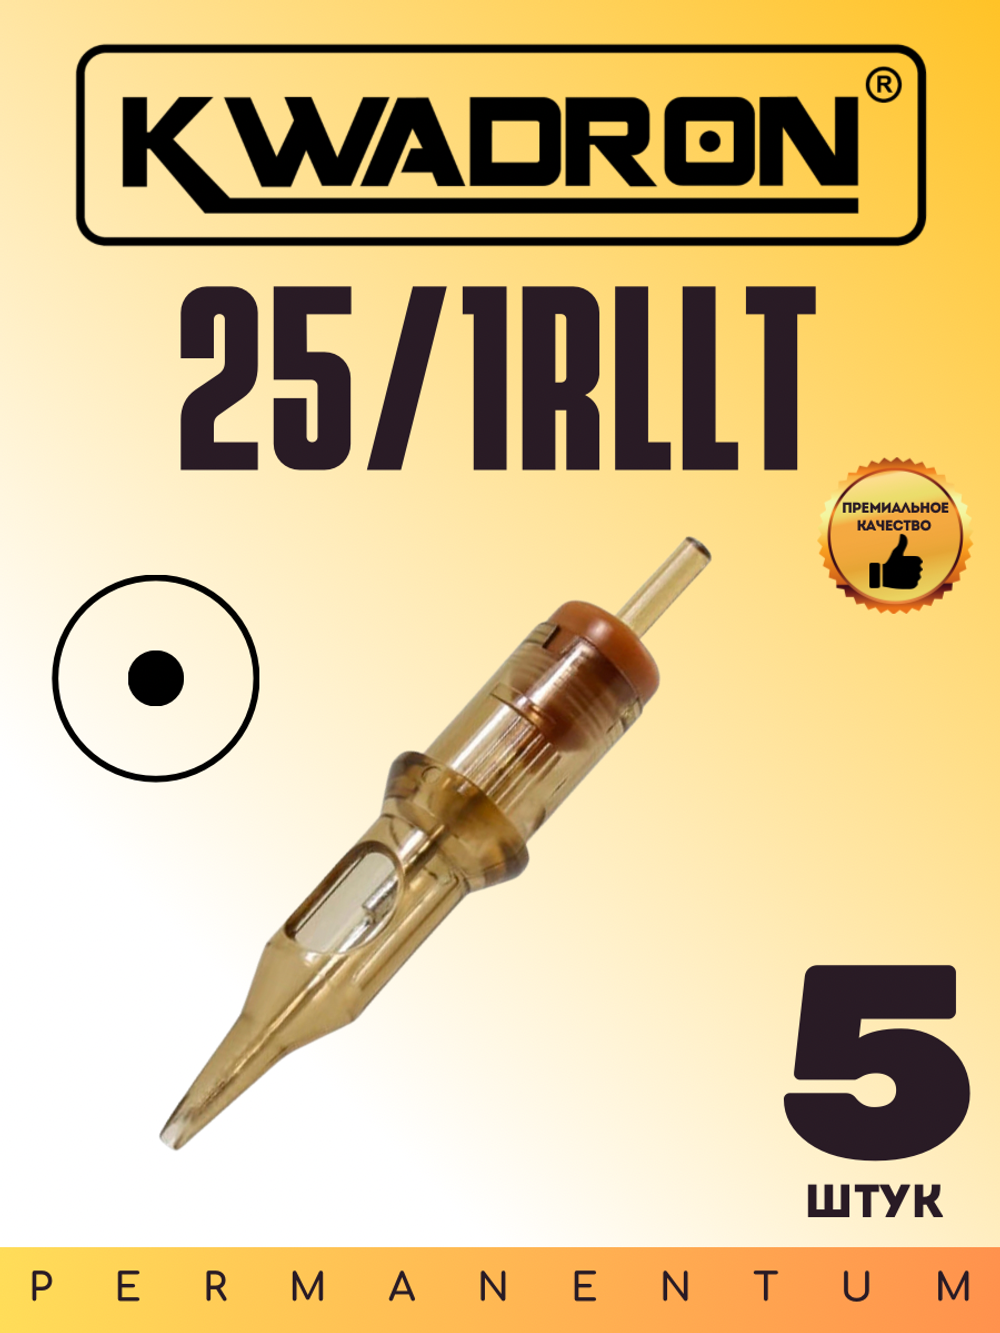 Картридж для татуажа "KWADRON Round Liner 25/1RLLT" блистер 5 шт.